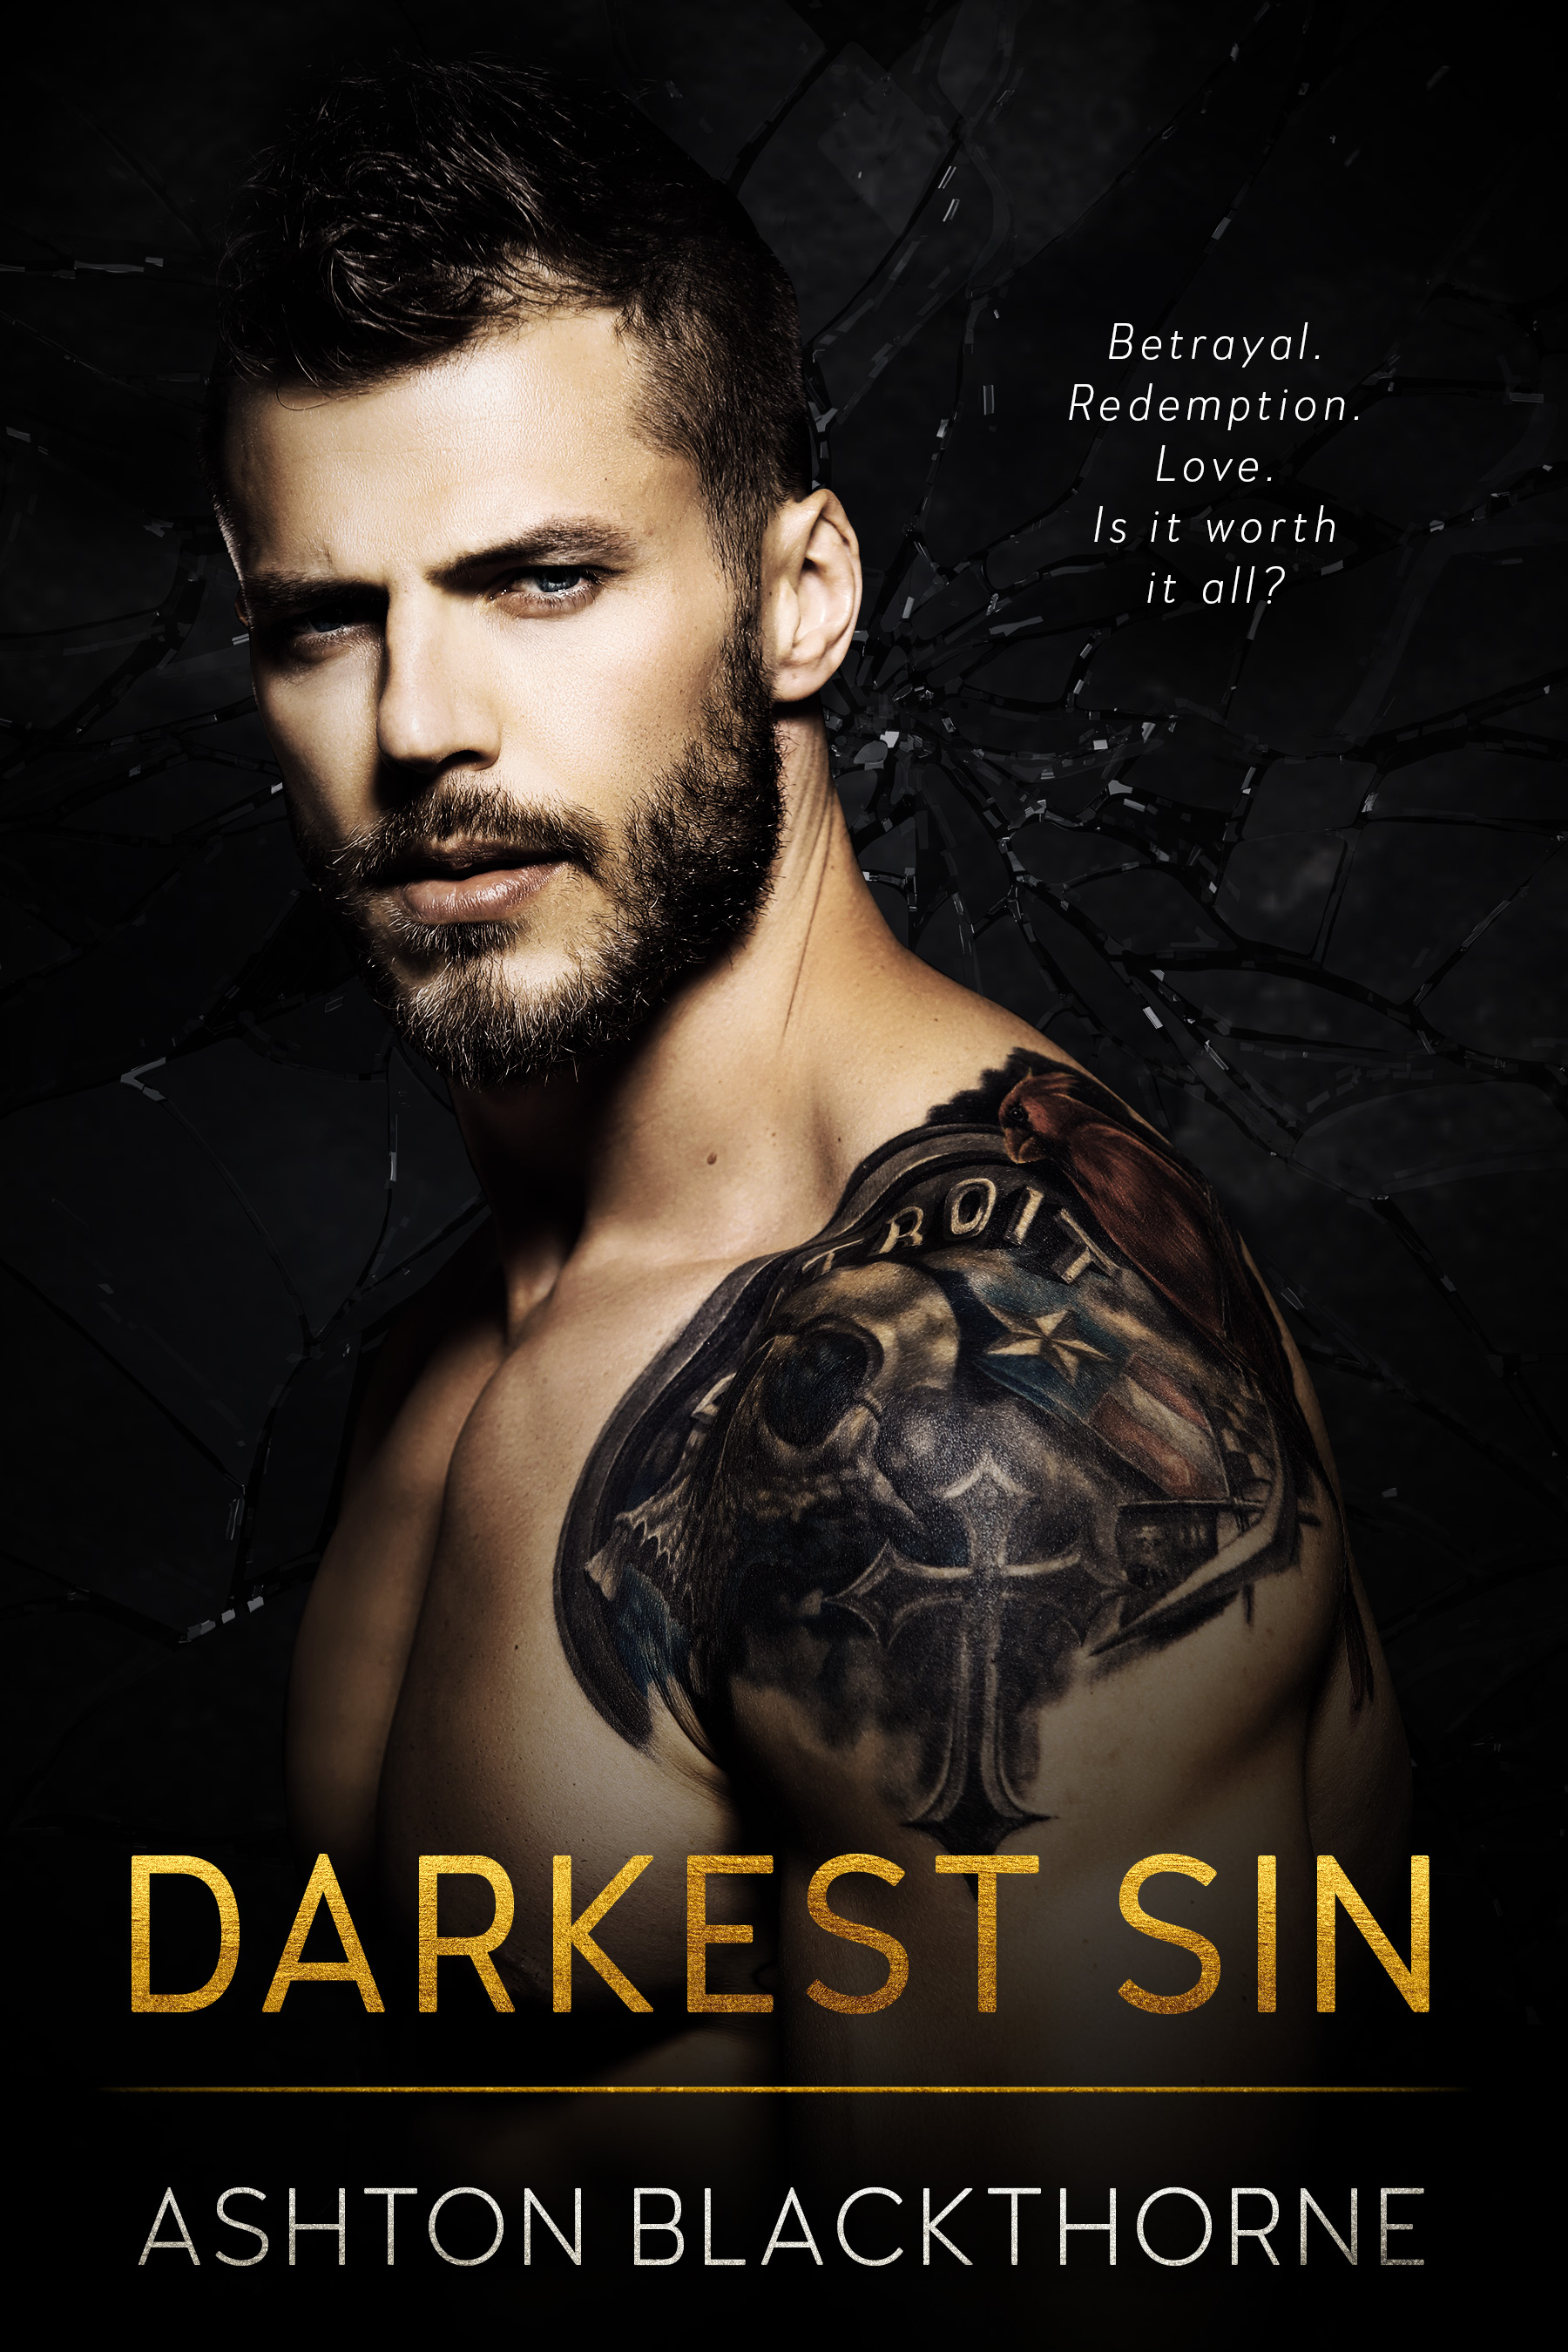 Darkest Sin by Ashton Blackthorne [Release Boost]